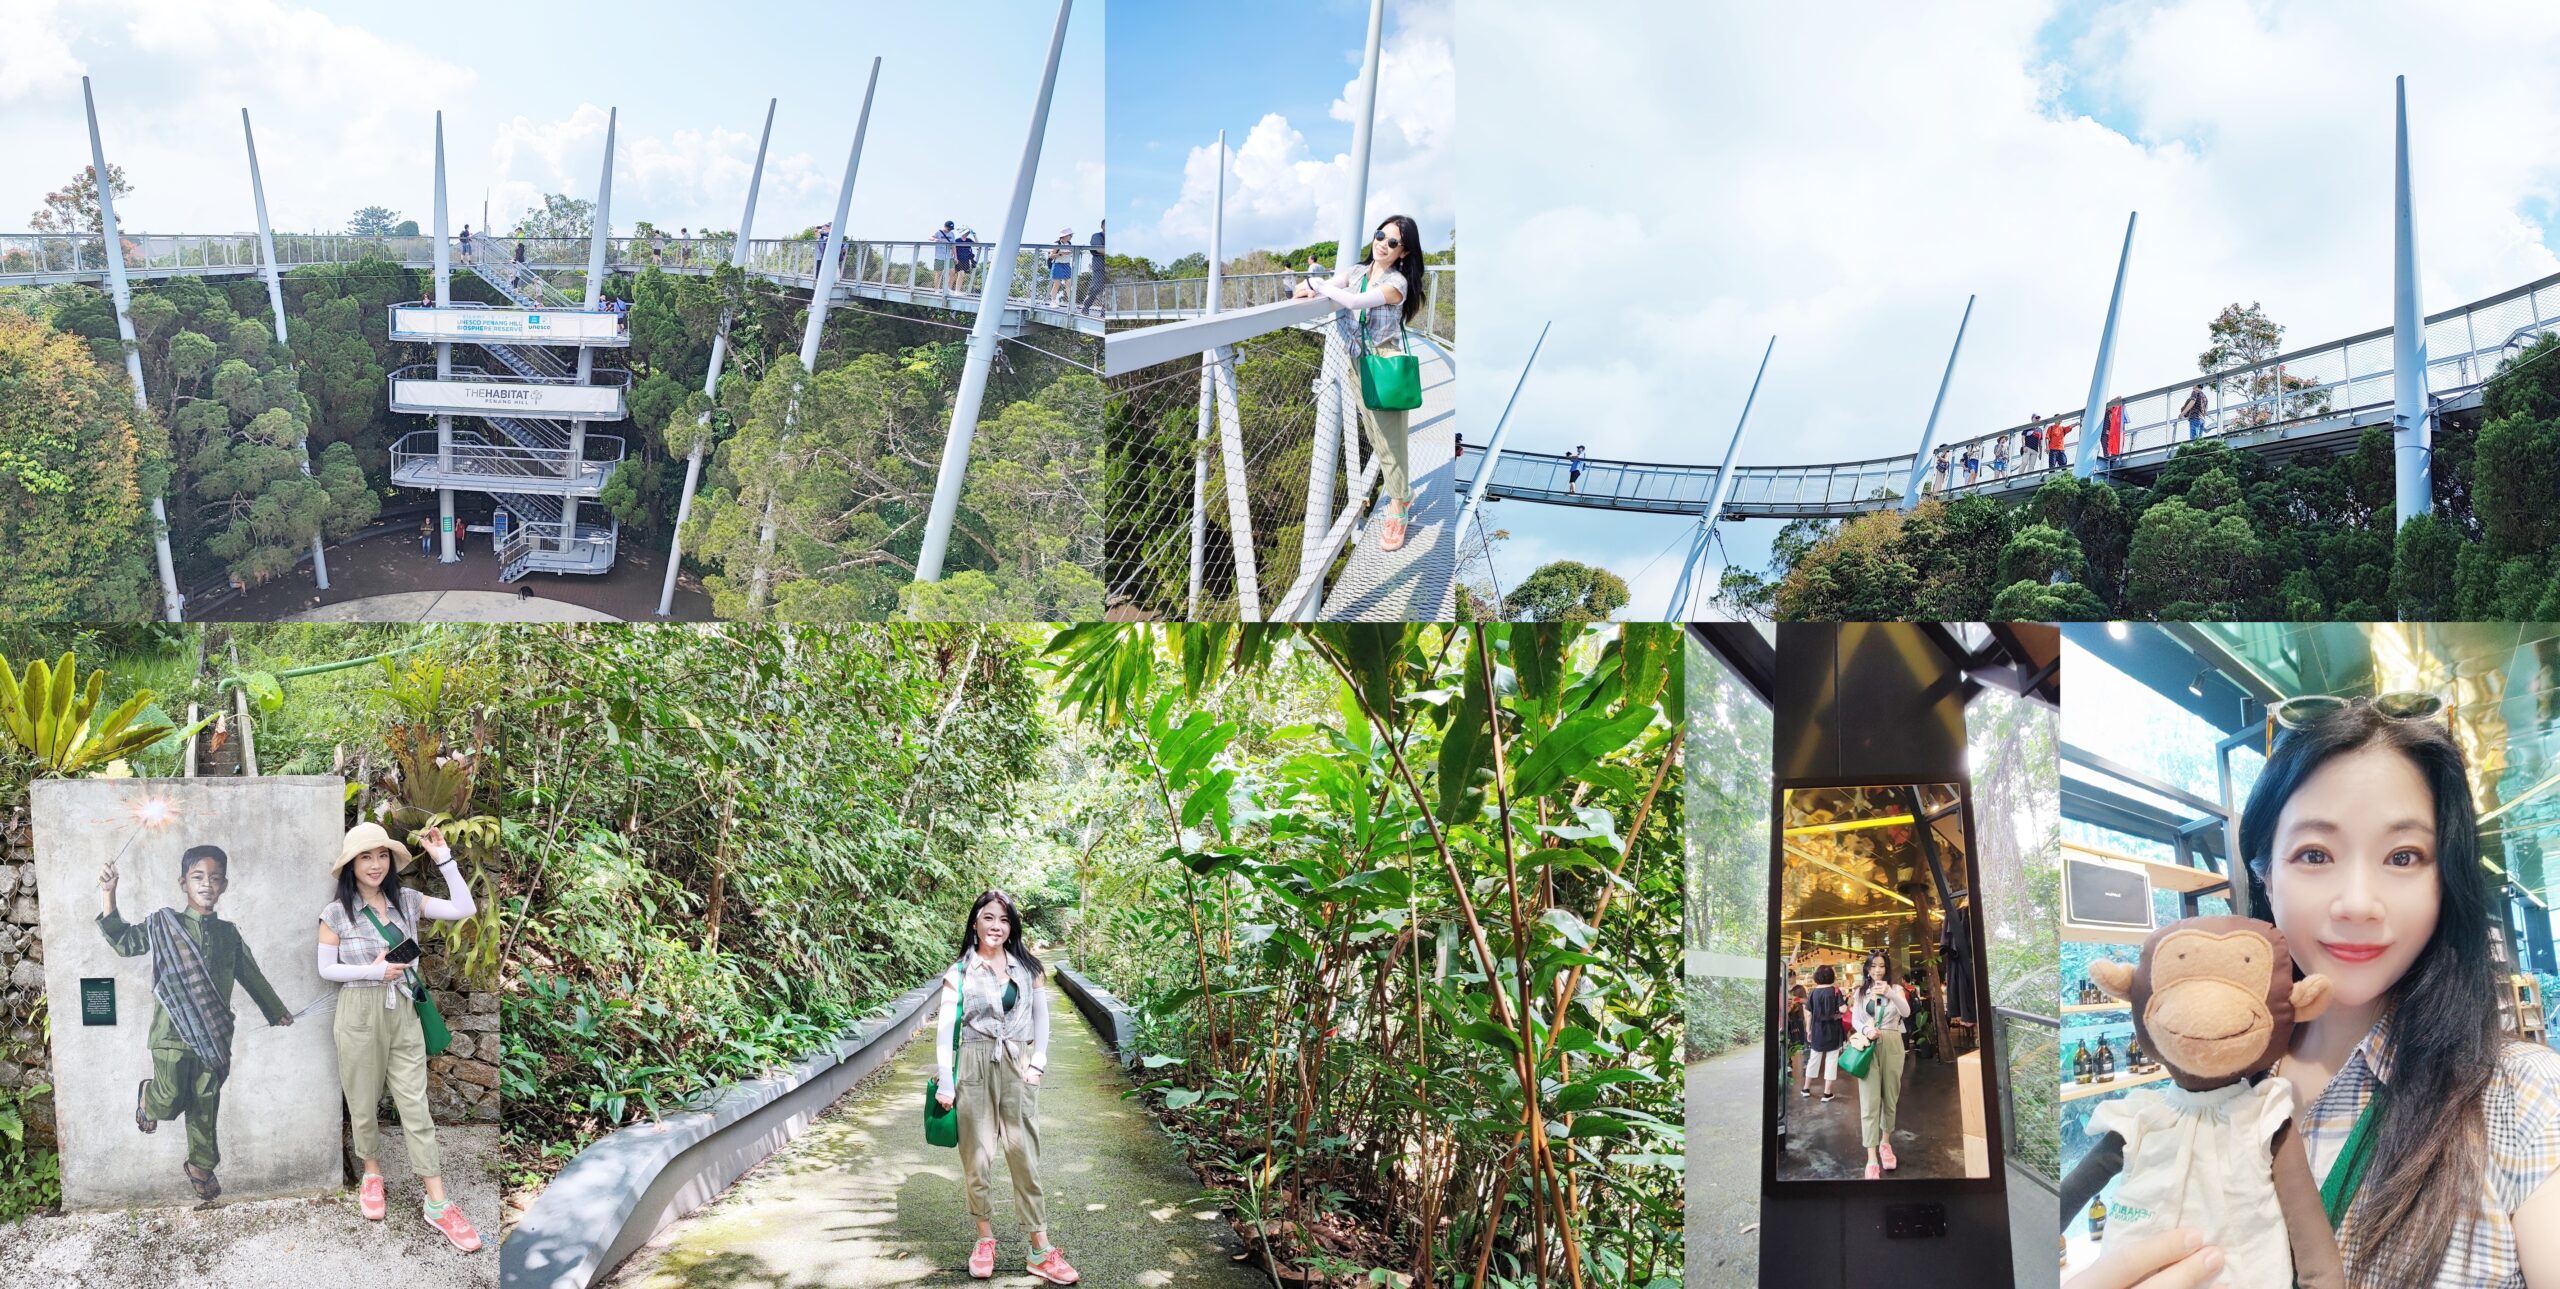 ◎馬來西亞檳城【升旗山、自然生態公園、森林吊橋、360度天空觀景步道】歷史文化、自然雨林全都錄